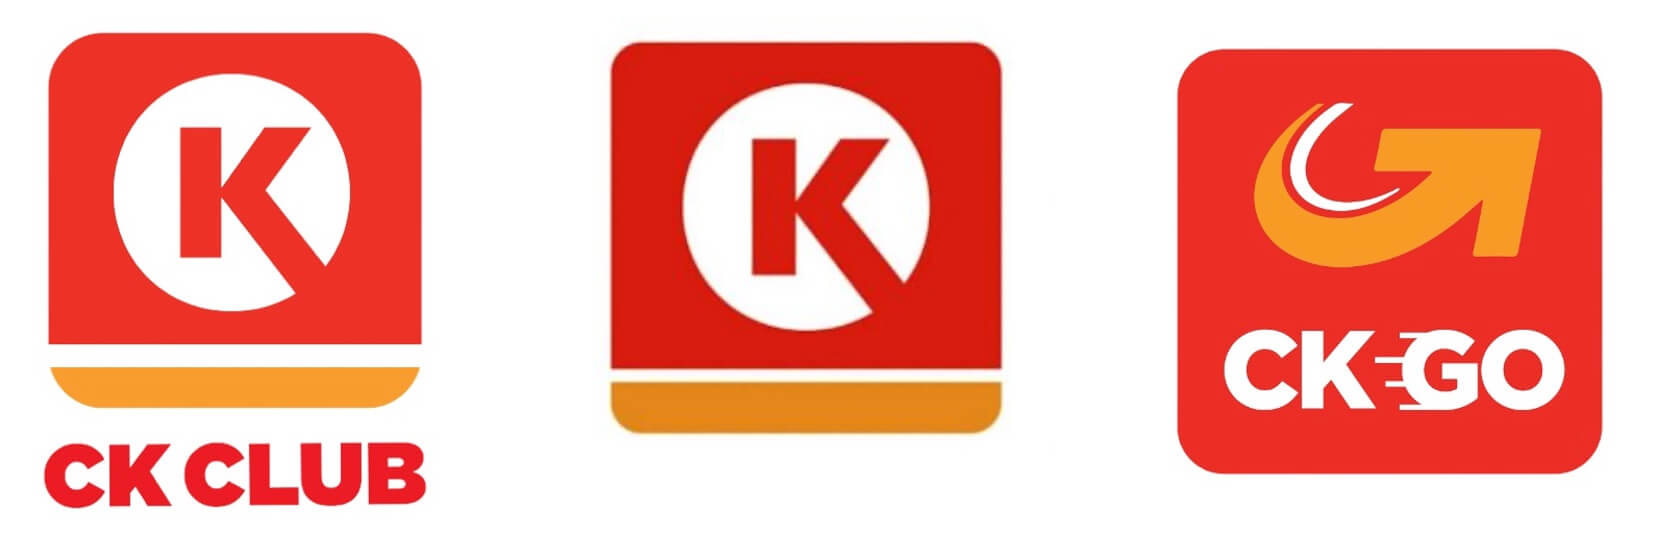 CK club App logo